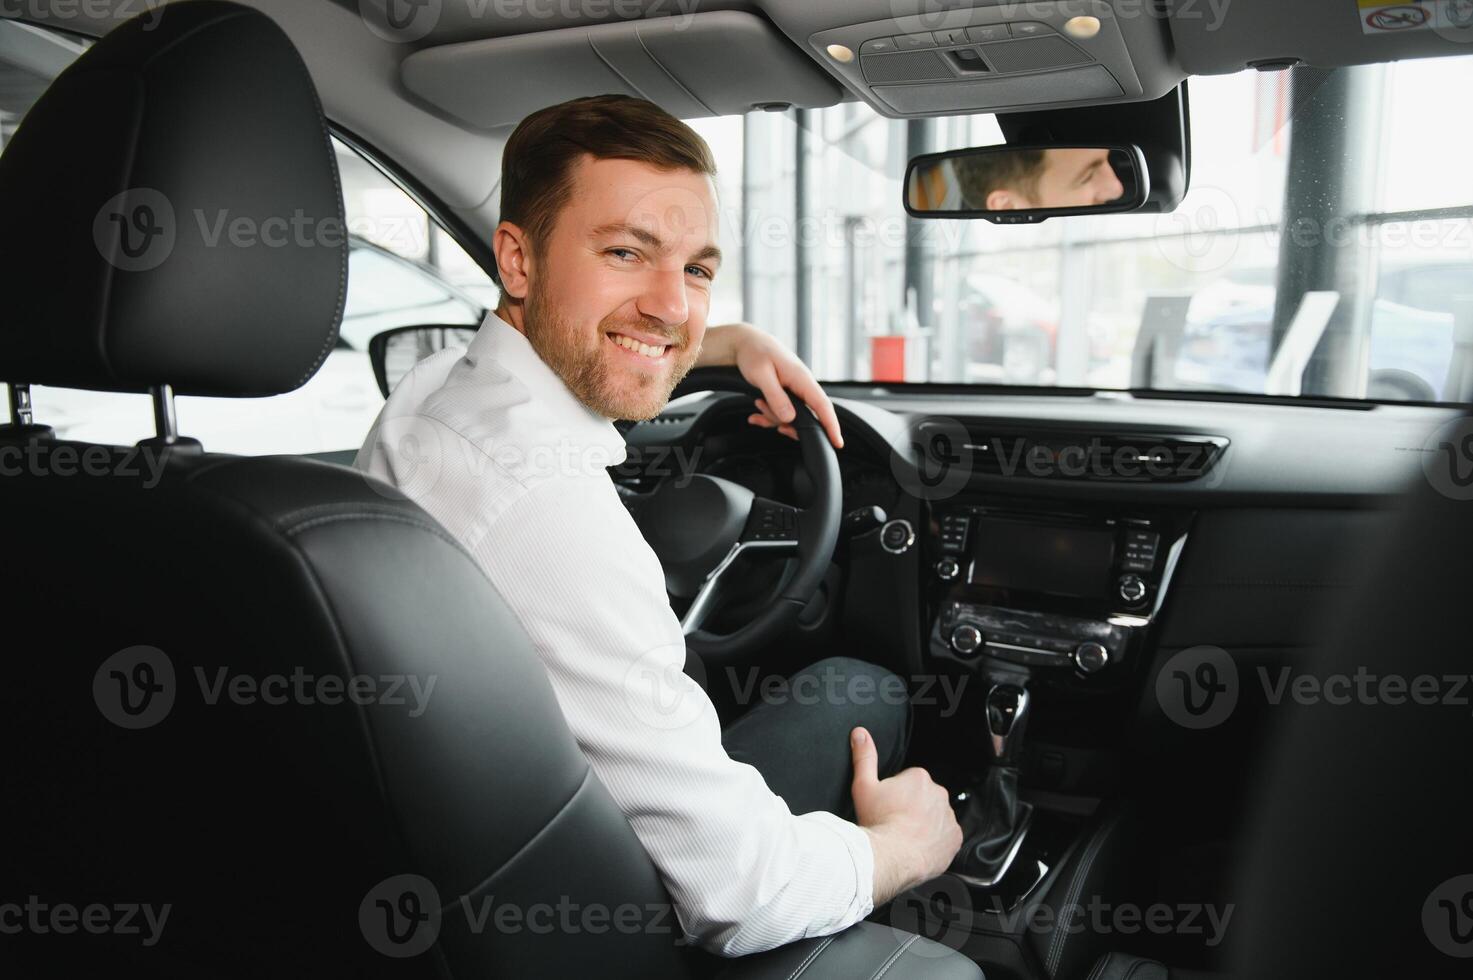 taxi bestuurder glimlachen terwijl draaien over- naar de achterbank op zoek pratend met klanten. geslaagd zakenman man op zoek Bij de achterbank Bij handelaar winkel voordat buying een auto foto